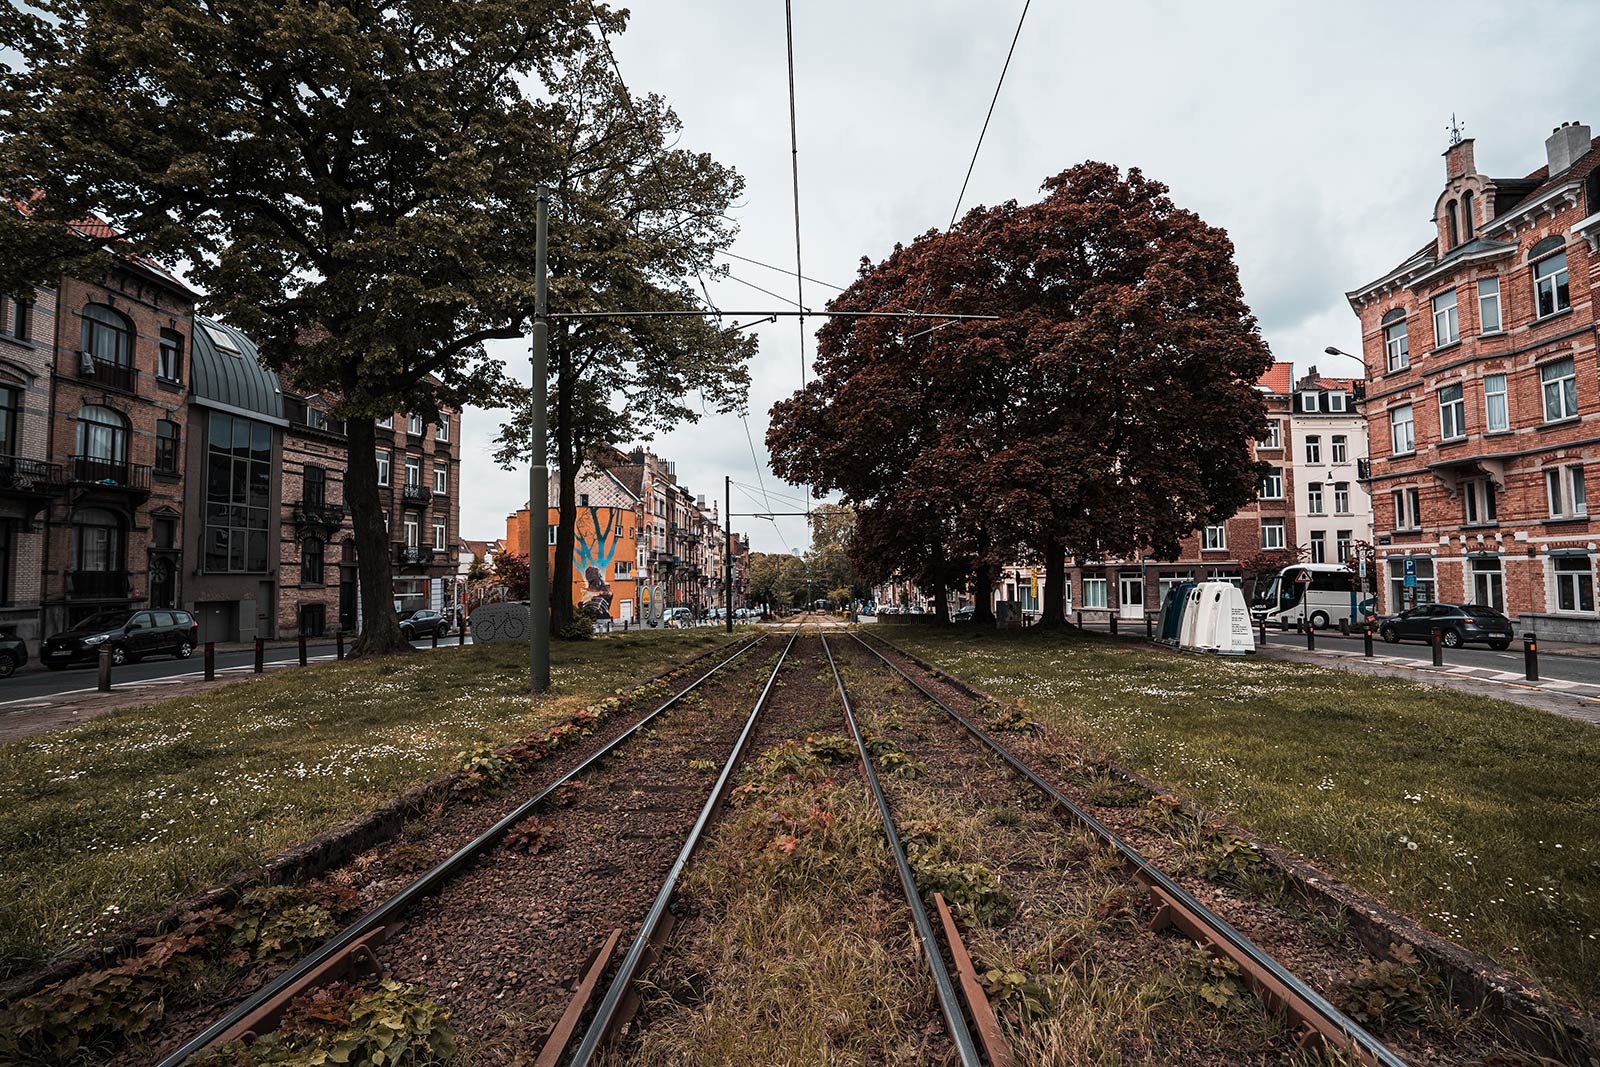 Railroad tracks in Brussels, Belgium. Visas, mussles & pis in Brussels